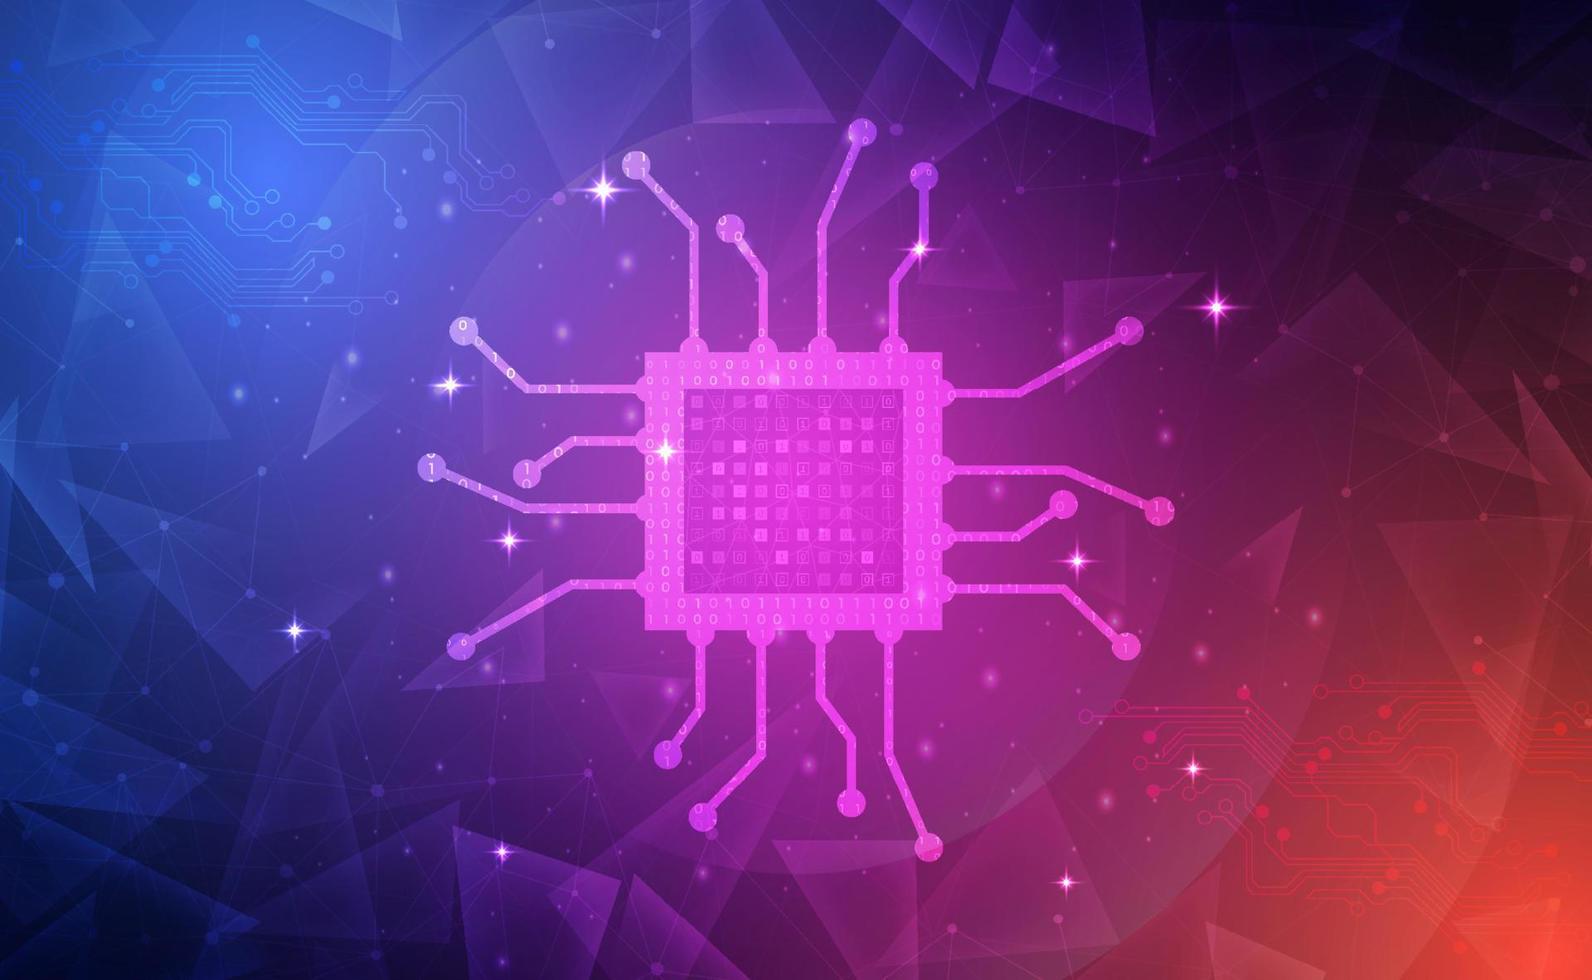 digitale technologie elektronischer chip rosa blau hintergrundkonzept, cpu ram speicher mikroprozessor computer elektrische hardware, cyber future futuristisch, abstrakte große datennetzwerktechnologie, illustrationsvektor vektor